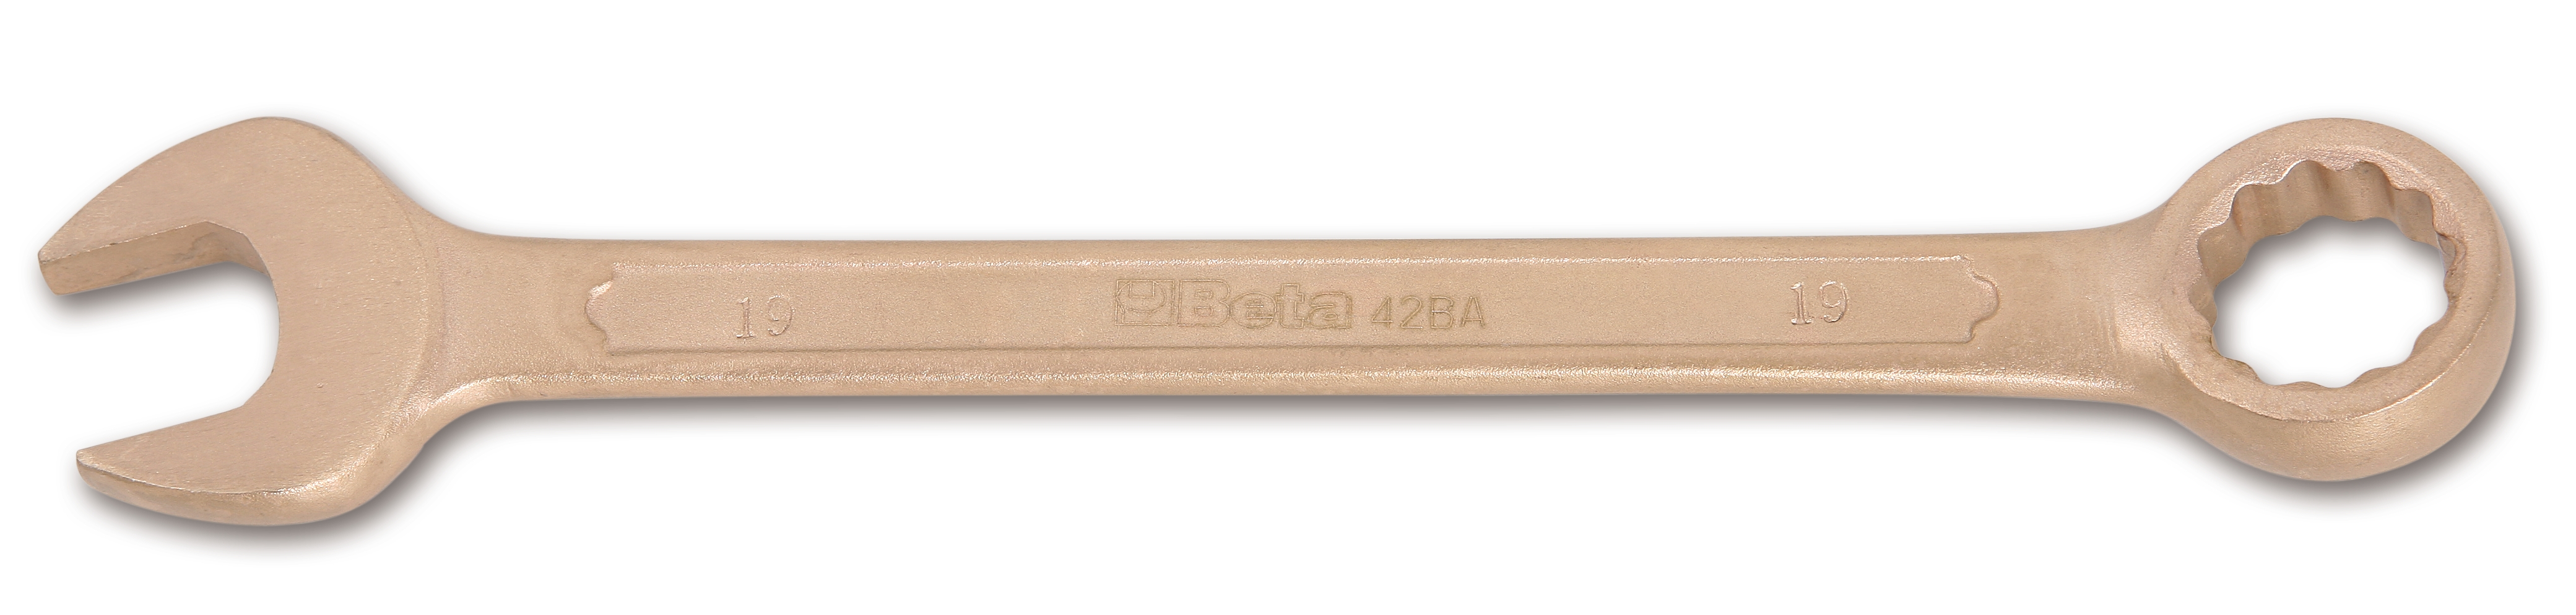 Γερμανοπολύγωνo 35mm Αντισπινθηρικό 42BA BETA